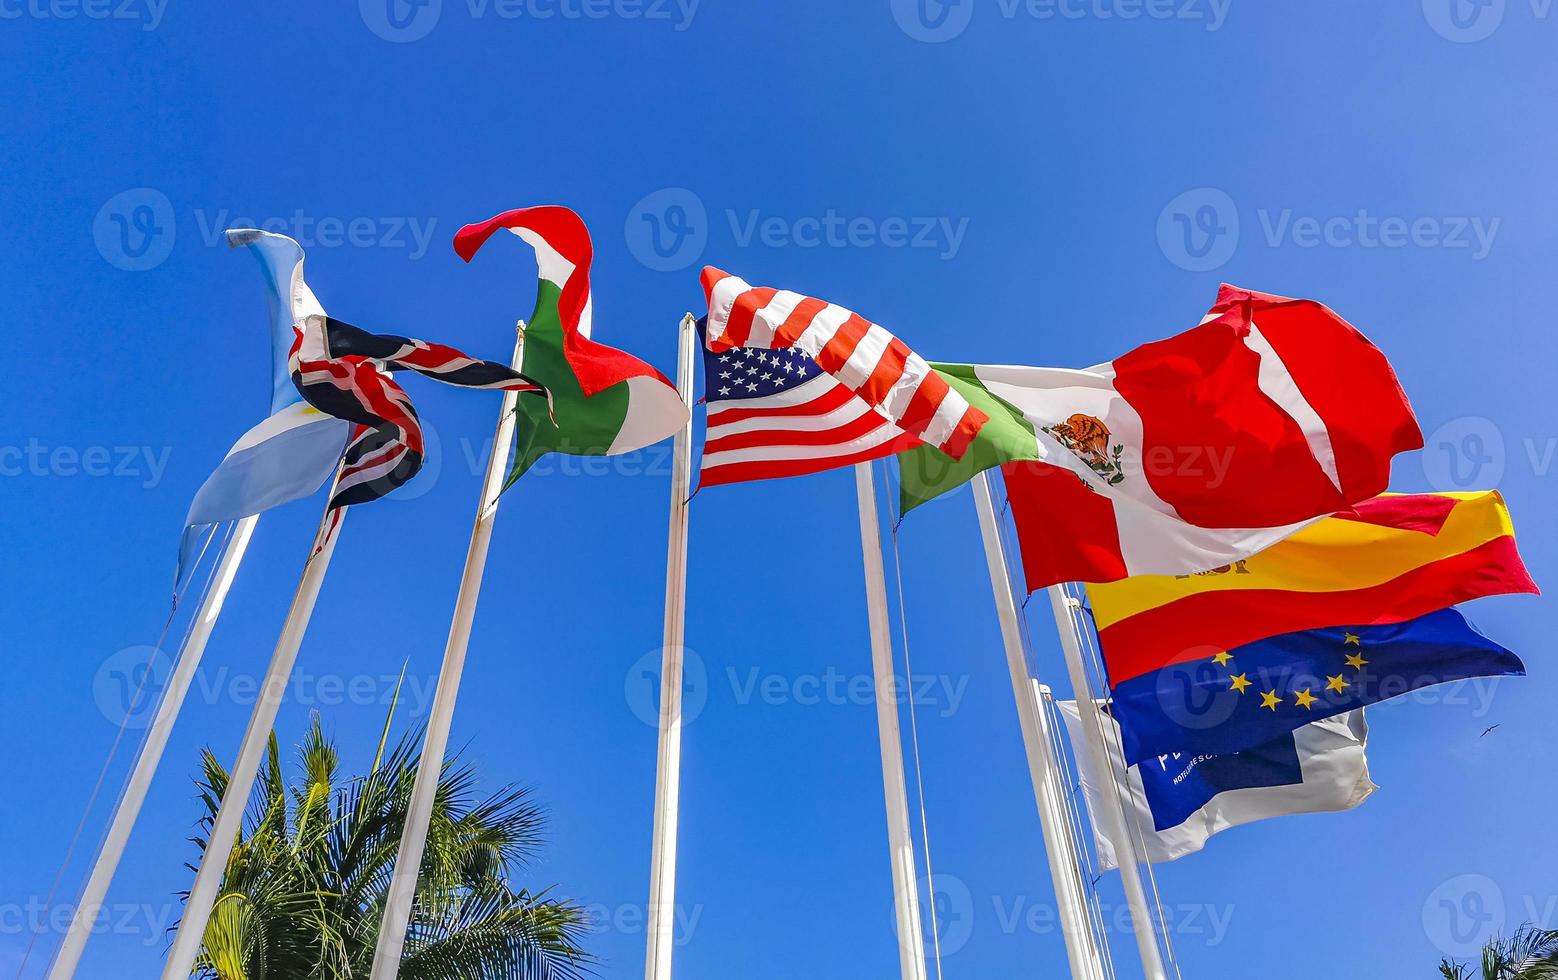 bandiere di molti paesi come la spagna, gli stati uniti, il canada, il messico. foto